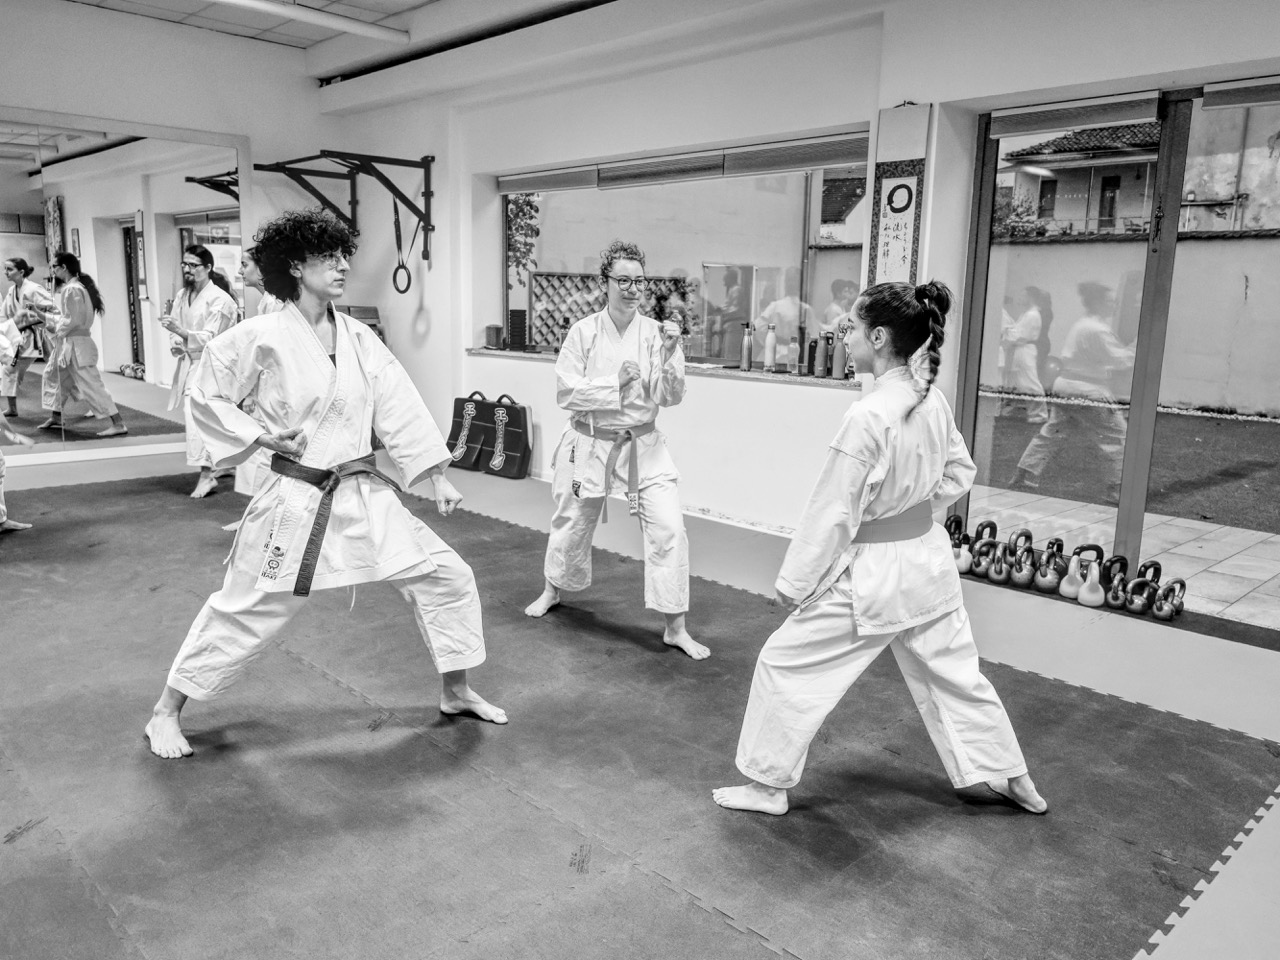 Il mio approccio al karate tradizionale